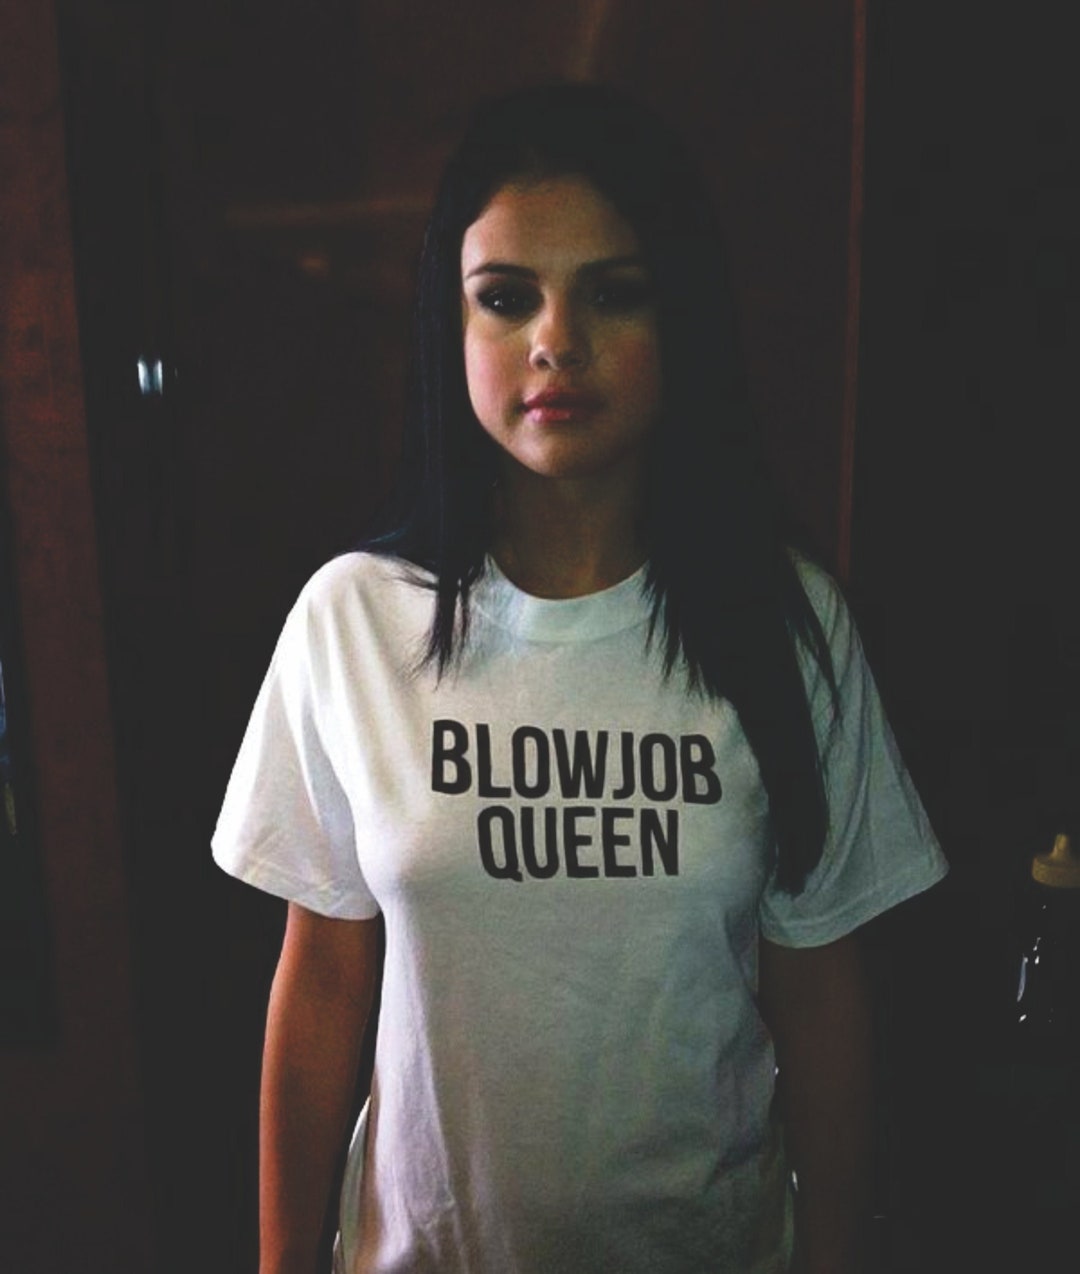 Queen blow job